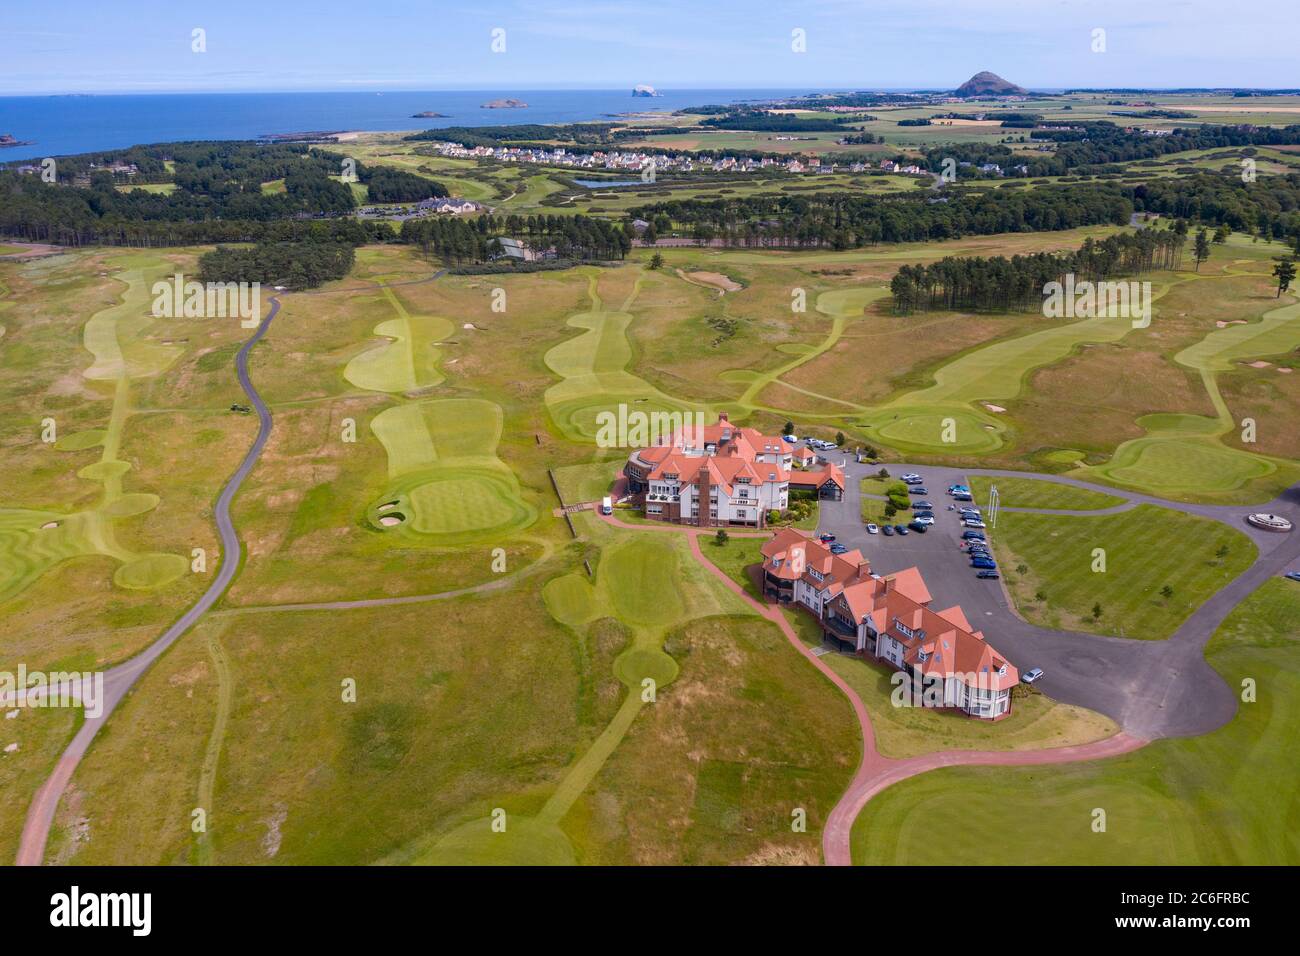 Vue aérienne du pavillon du parcours de golf Renaissance Club près de North Berwick à East Lothian, Écosse, Royaume-Uni Banque D'Images